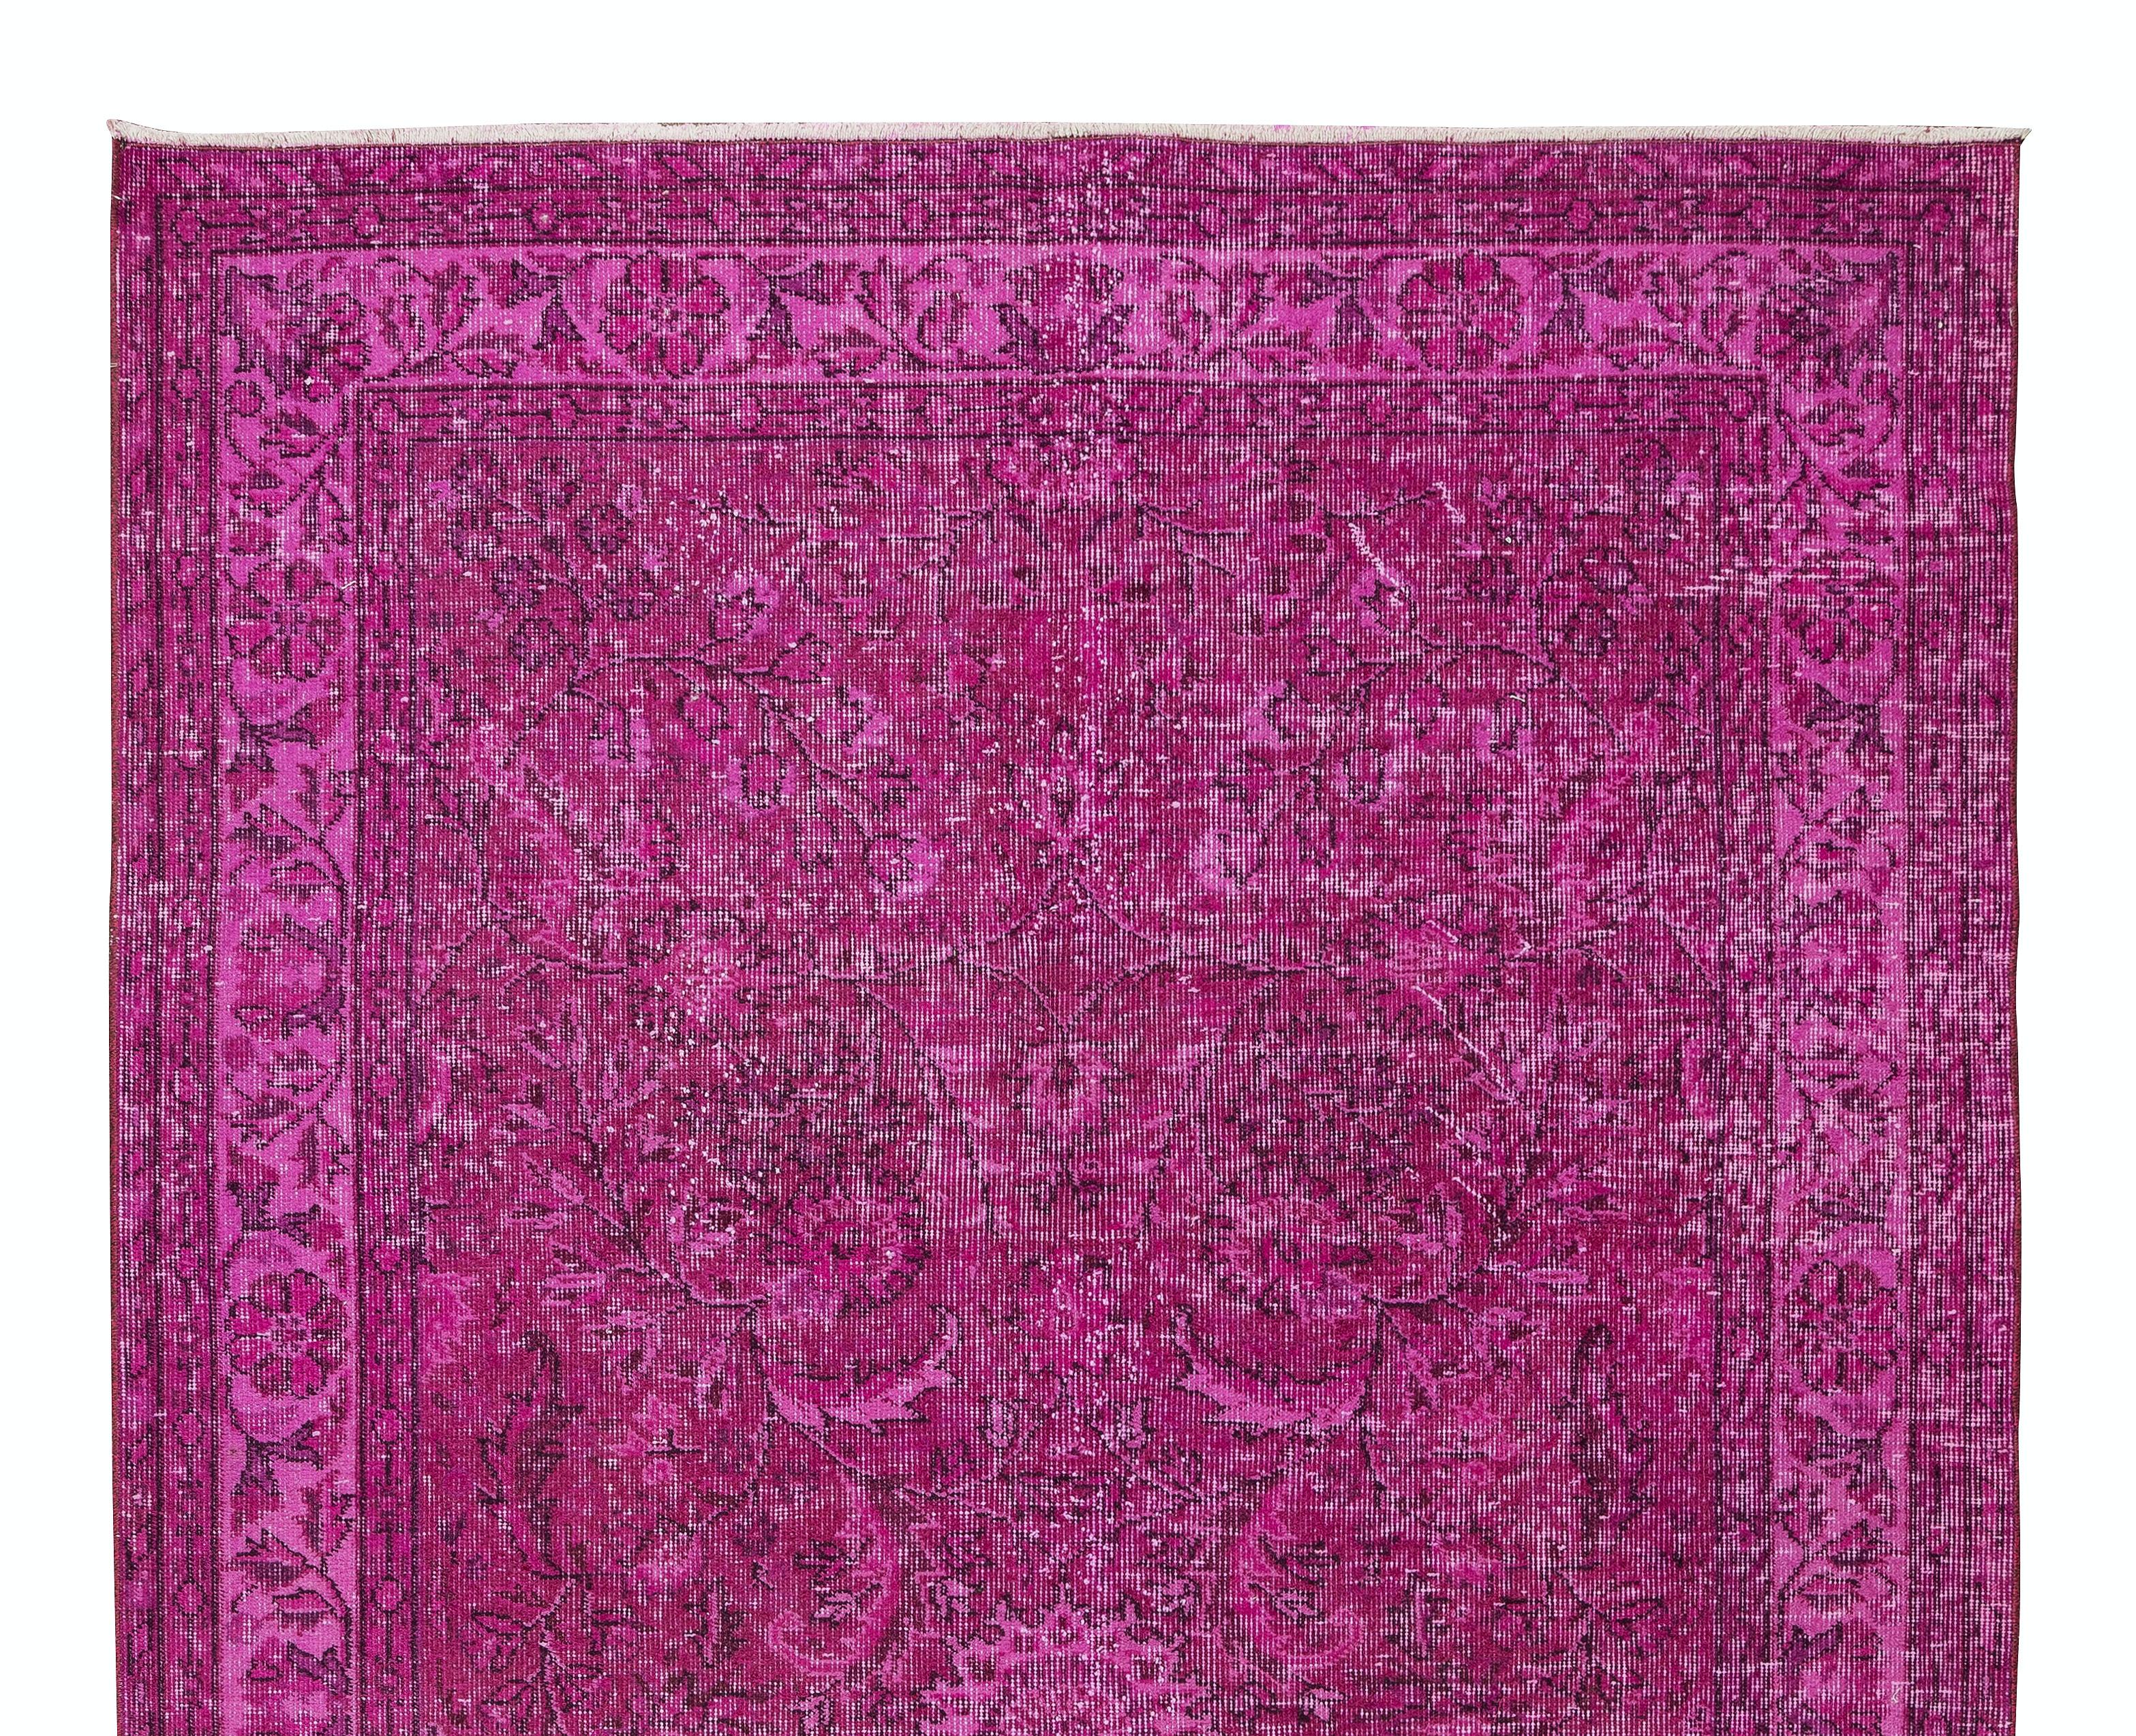 Turc 5.3x8.6 Ft Handmade Turkish Decorative Rug in Fuchsia Pink for Modern Interiors (Tapis décoratif turc fait main en rose fuchsia pour les intérieurs modernes) en vente